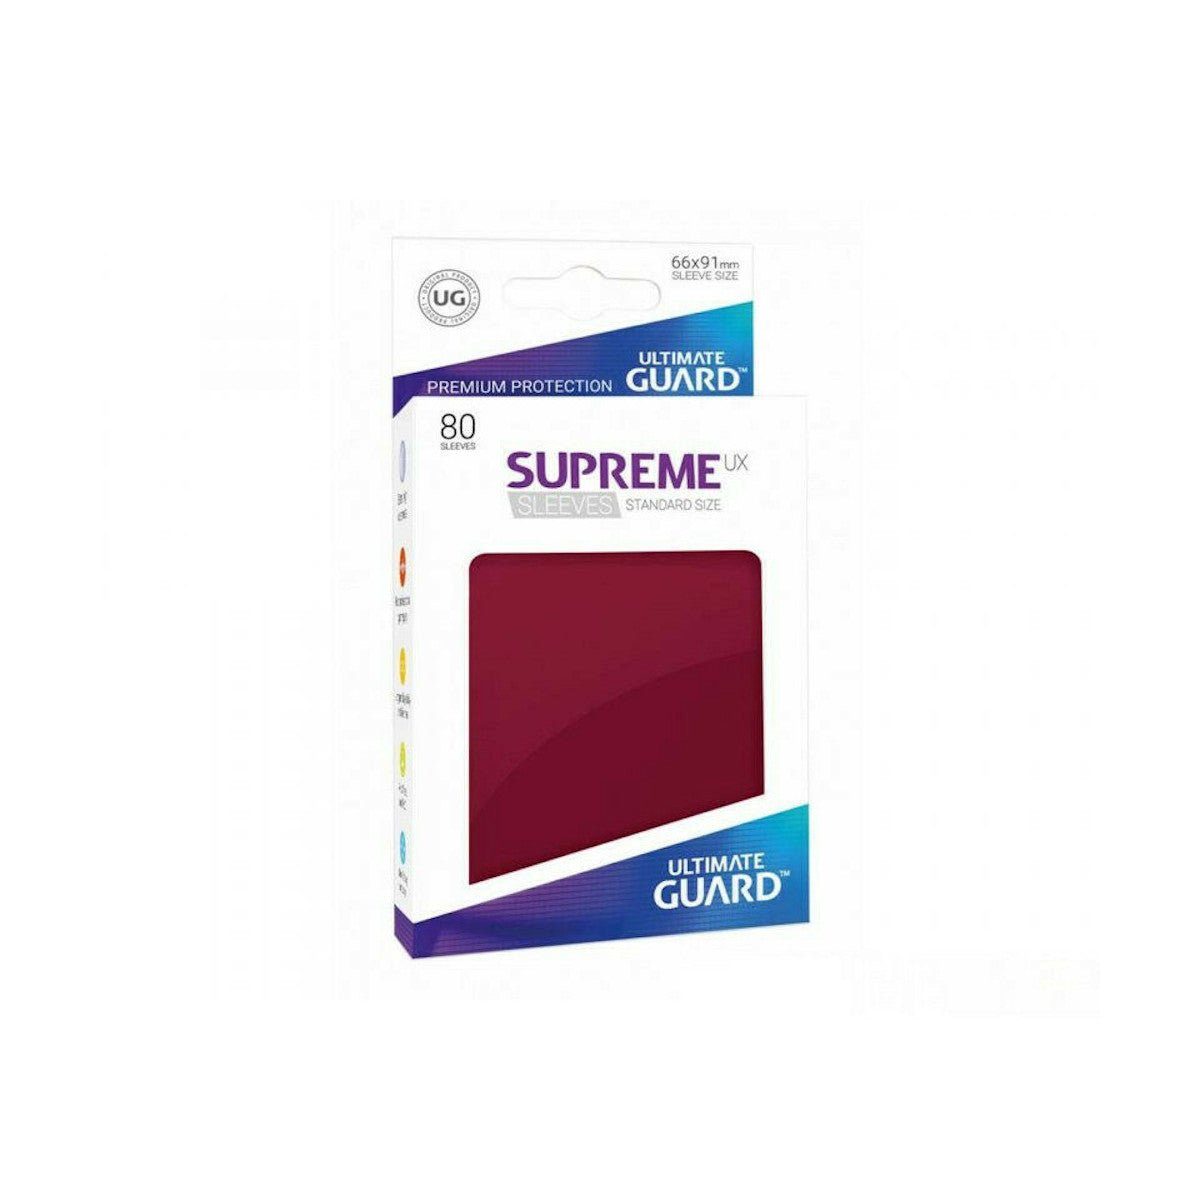 Supreme (80), Standard Sleeves Ultimate Sammelkarte Braun UX Guard